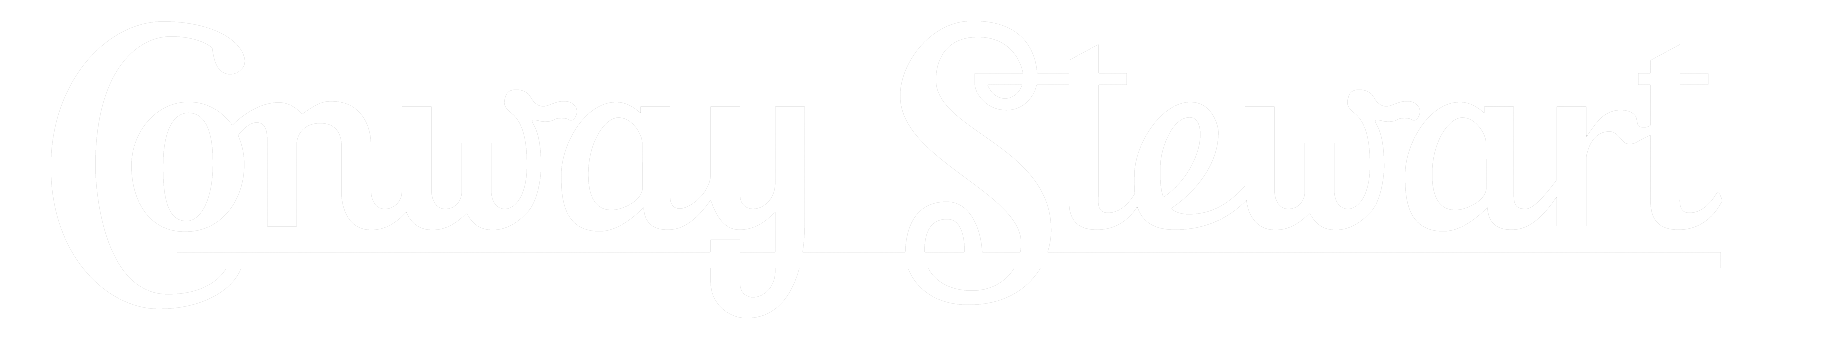 Conway Stewart logo